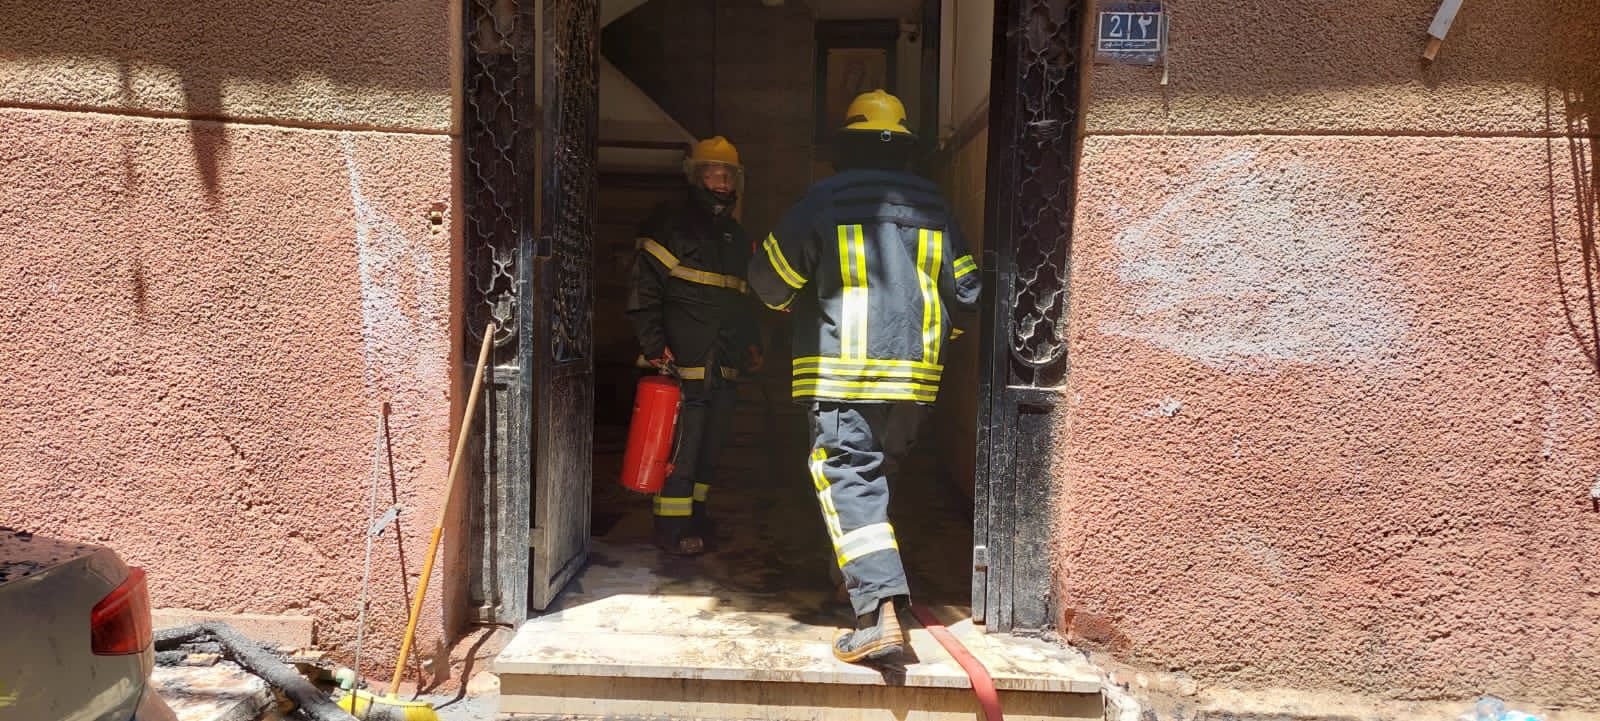 بطولة رجال الإطفاء فى حريق كنيسة أبو سيفين بالمنيرة  (1)